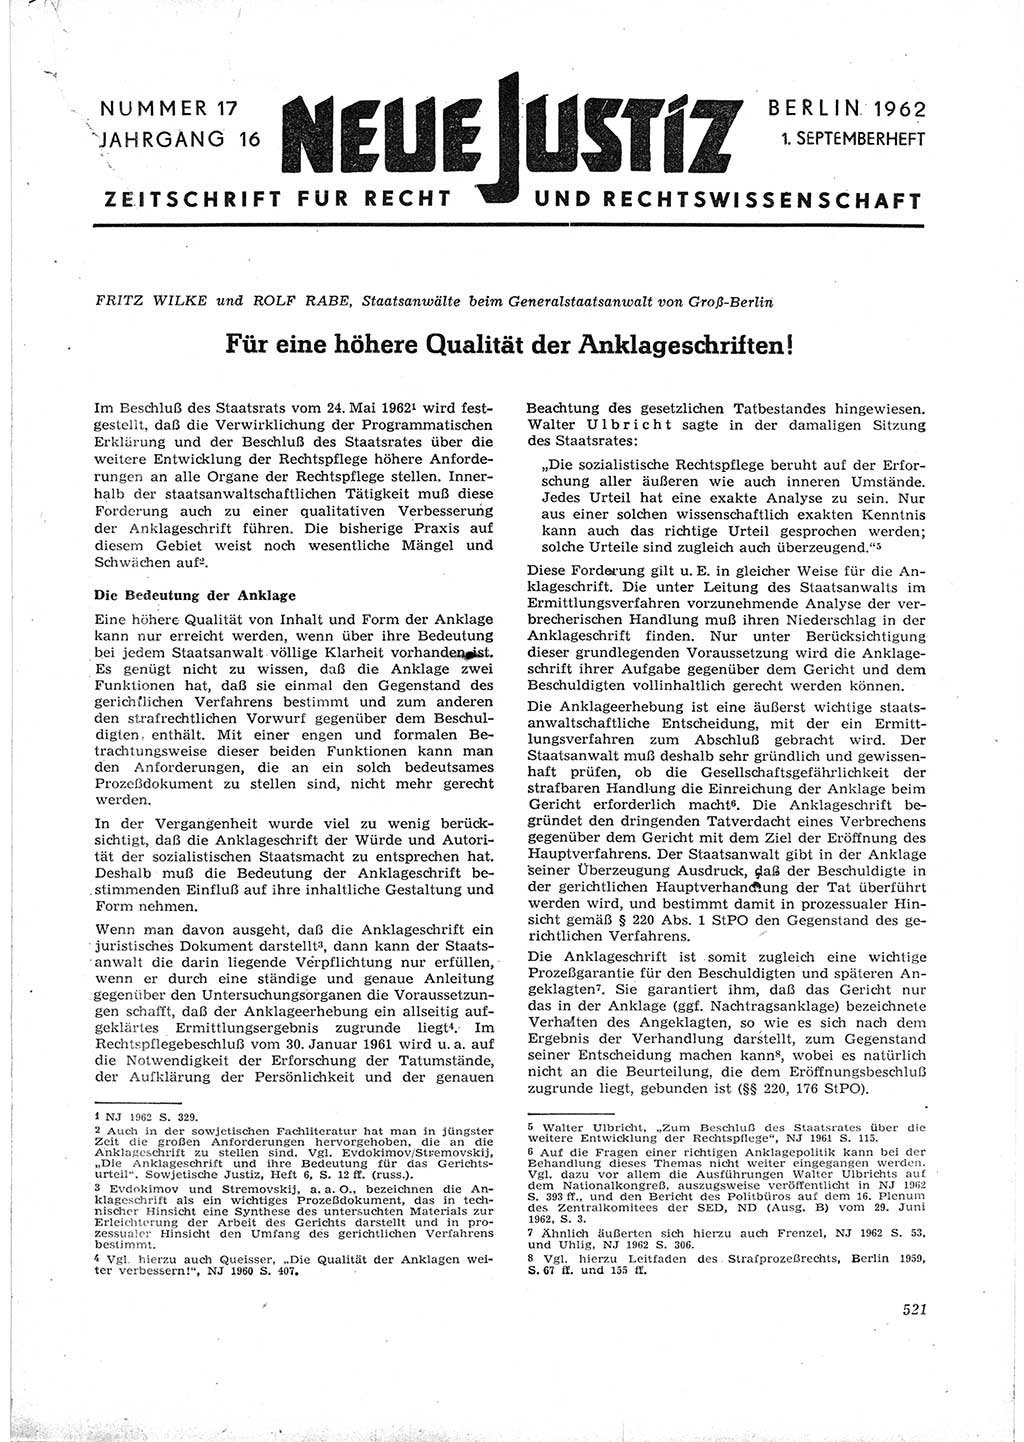 Neue Justiz (NJ), Zeitschrift für Recht und Rechtswissenschaft [Deutsche Demokratische Republik (DDR)], 16. Jahrgang 1962, Seite 521 (NJ DDR 1962, S. 521)